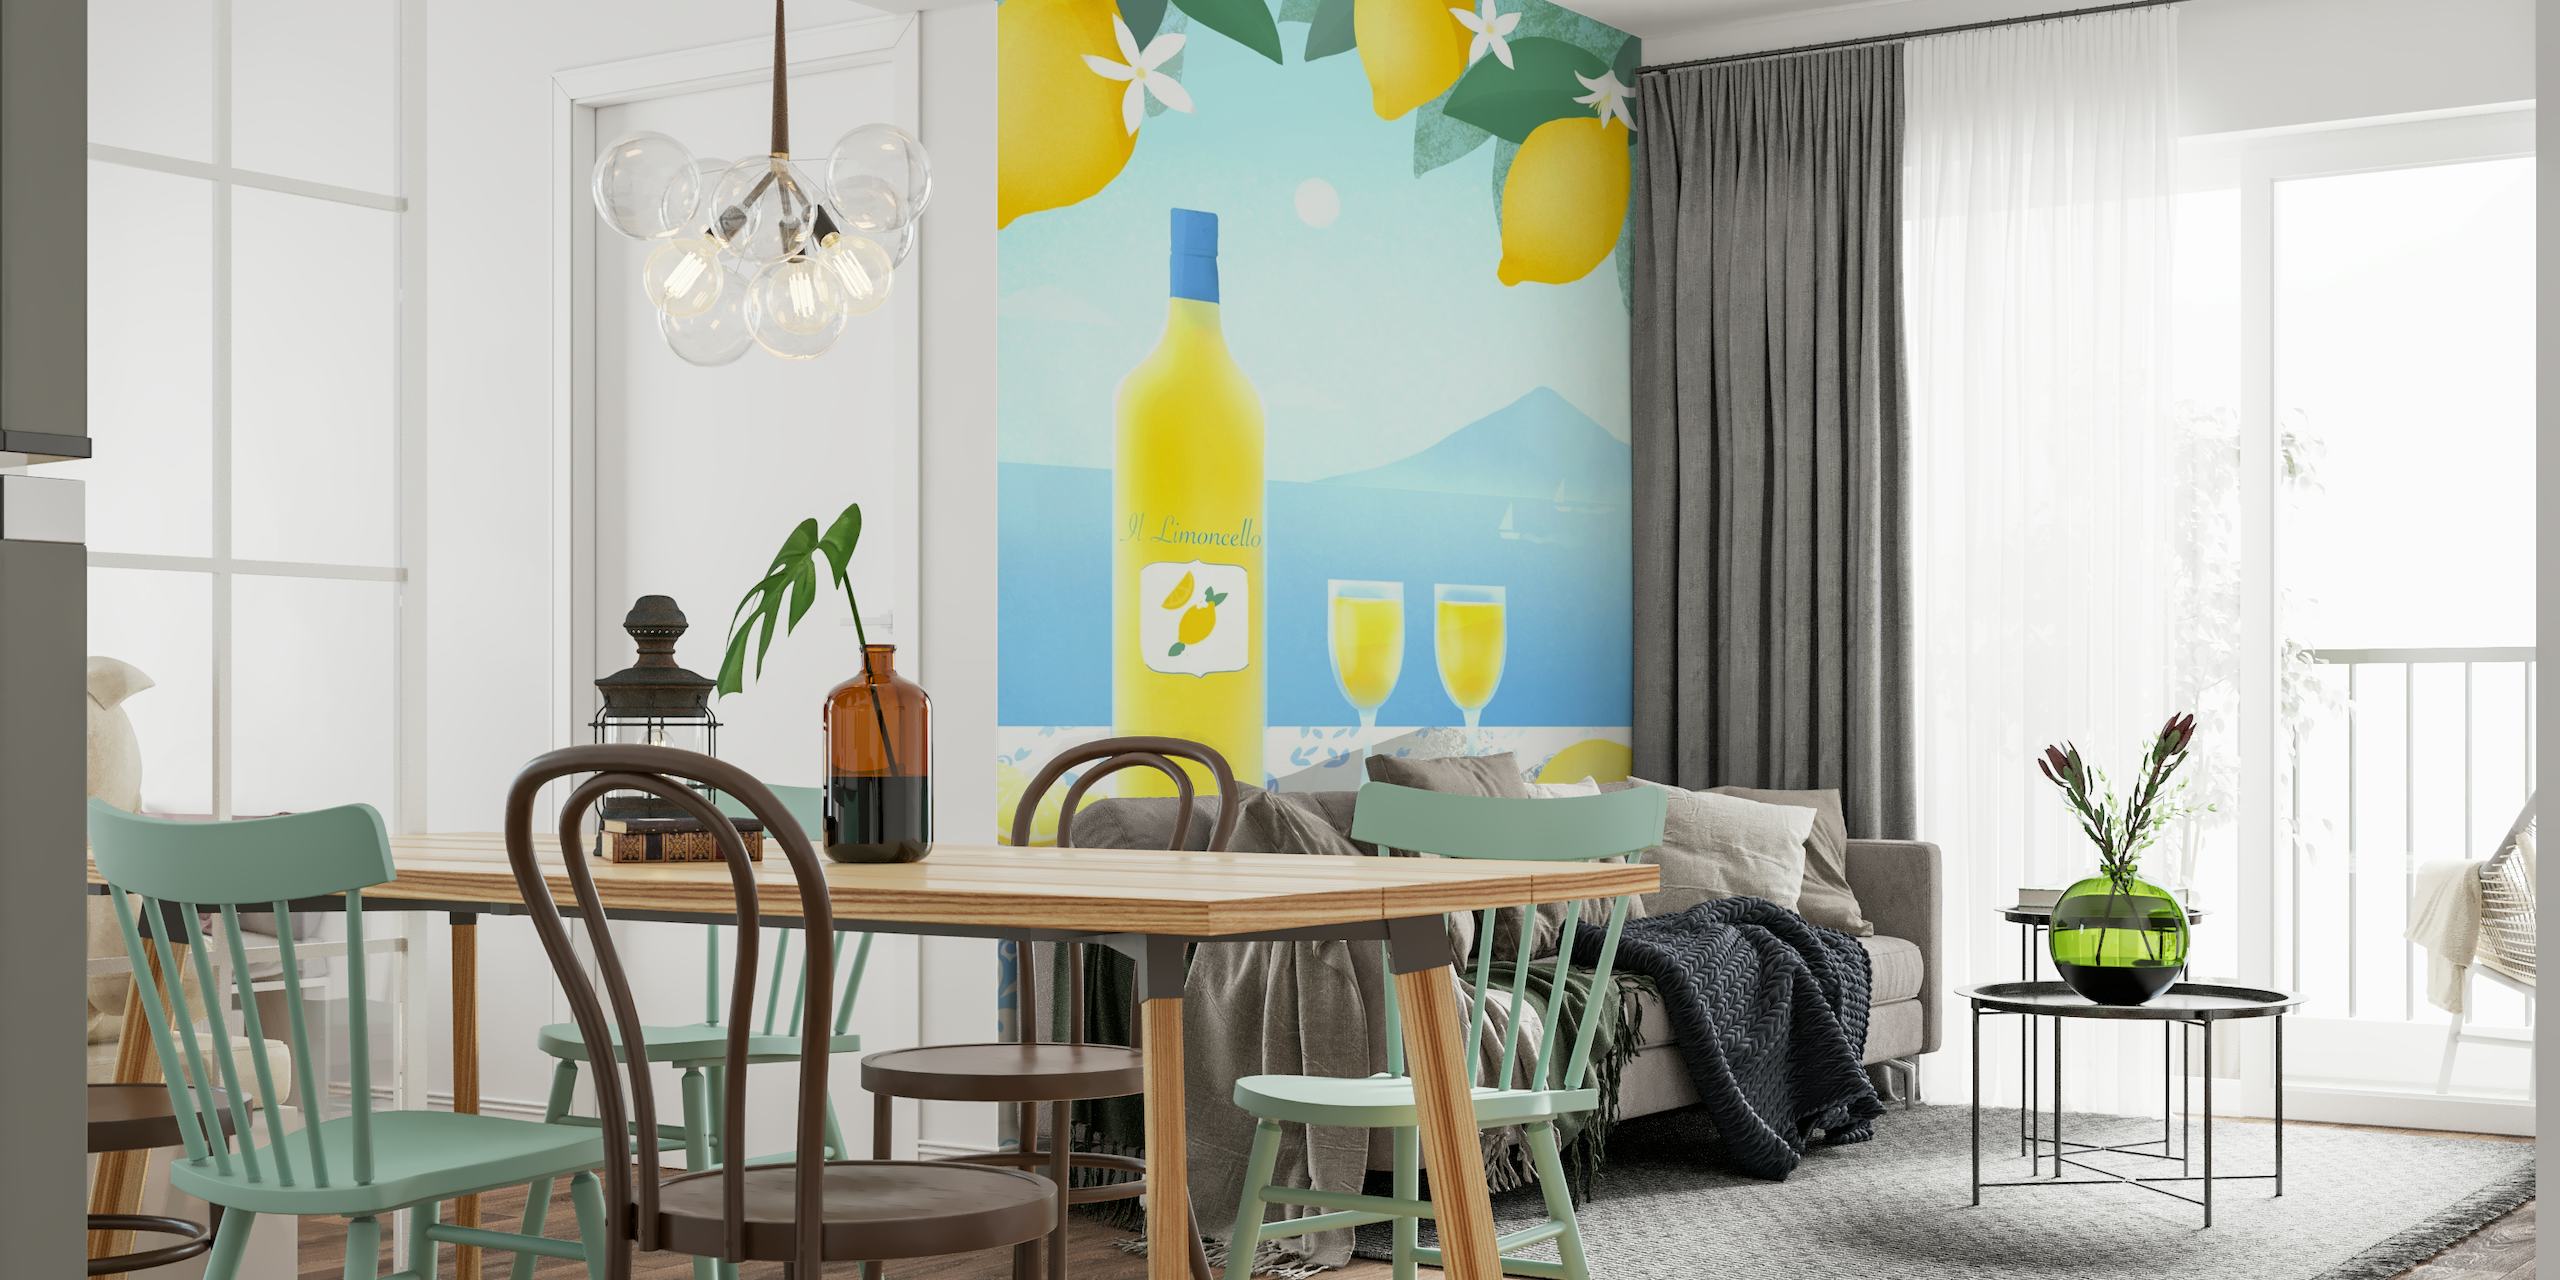 Fototapeta Limoncello z drzewami cytrynowymi, butelką limoncello, szklankami, widokiem na morze i śródziemnomorskimi kafelkami